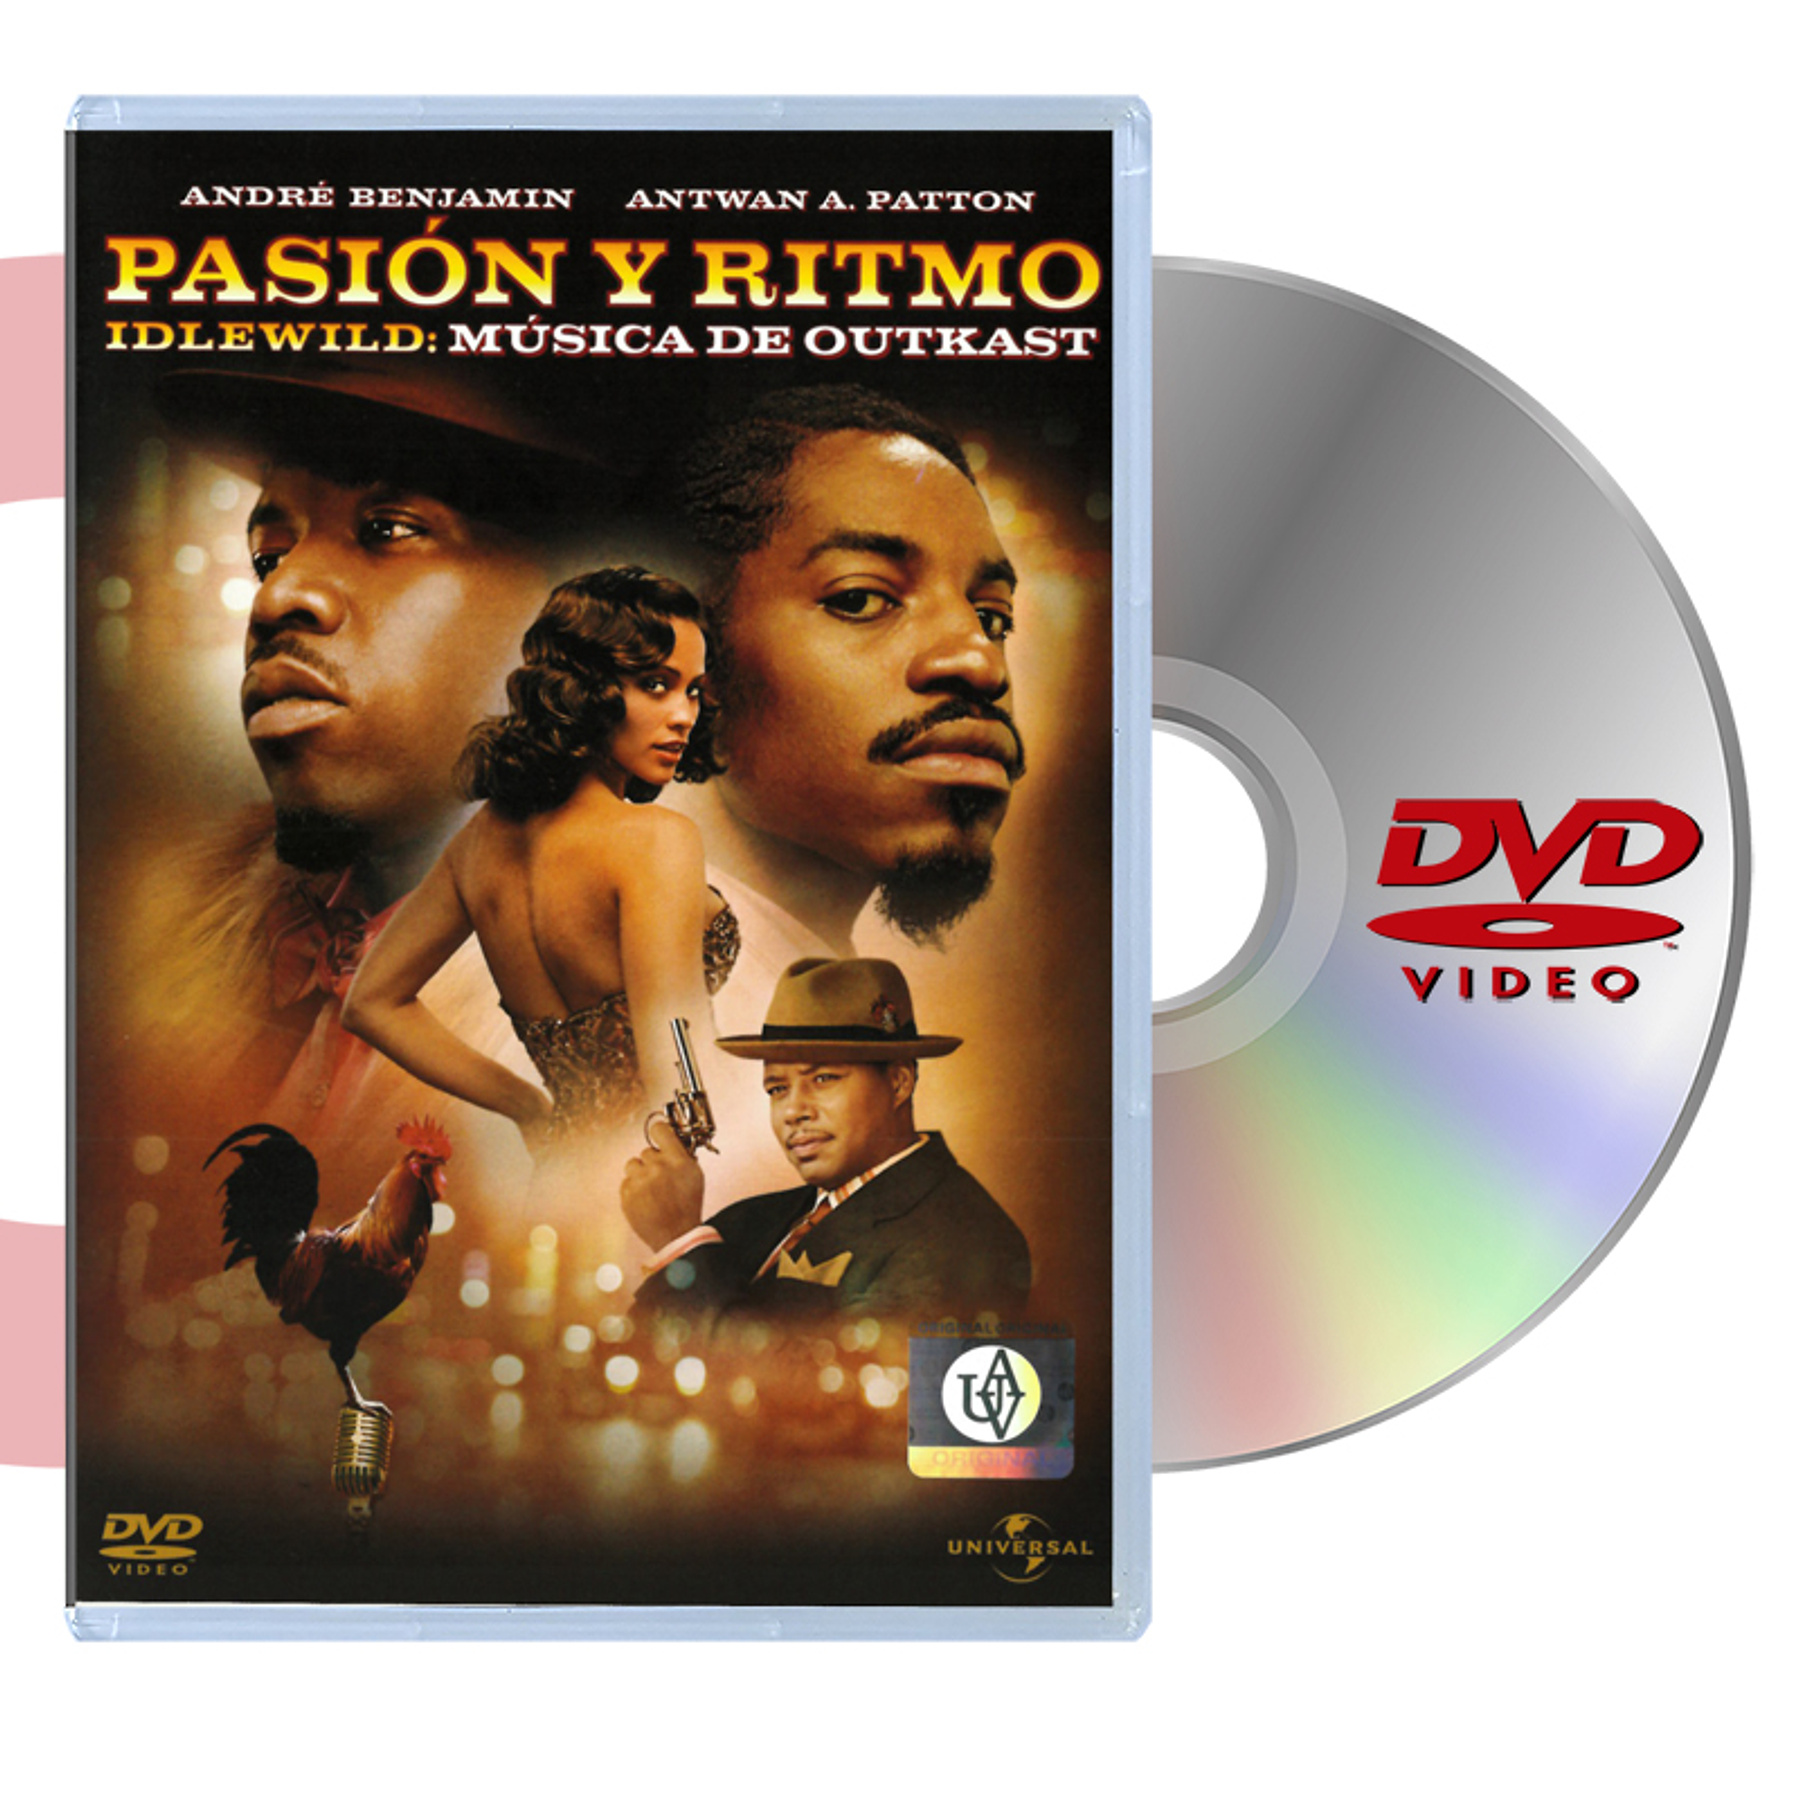 DVD PASION Y RITMO